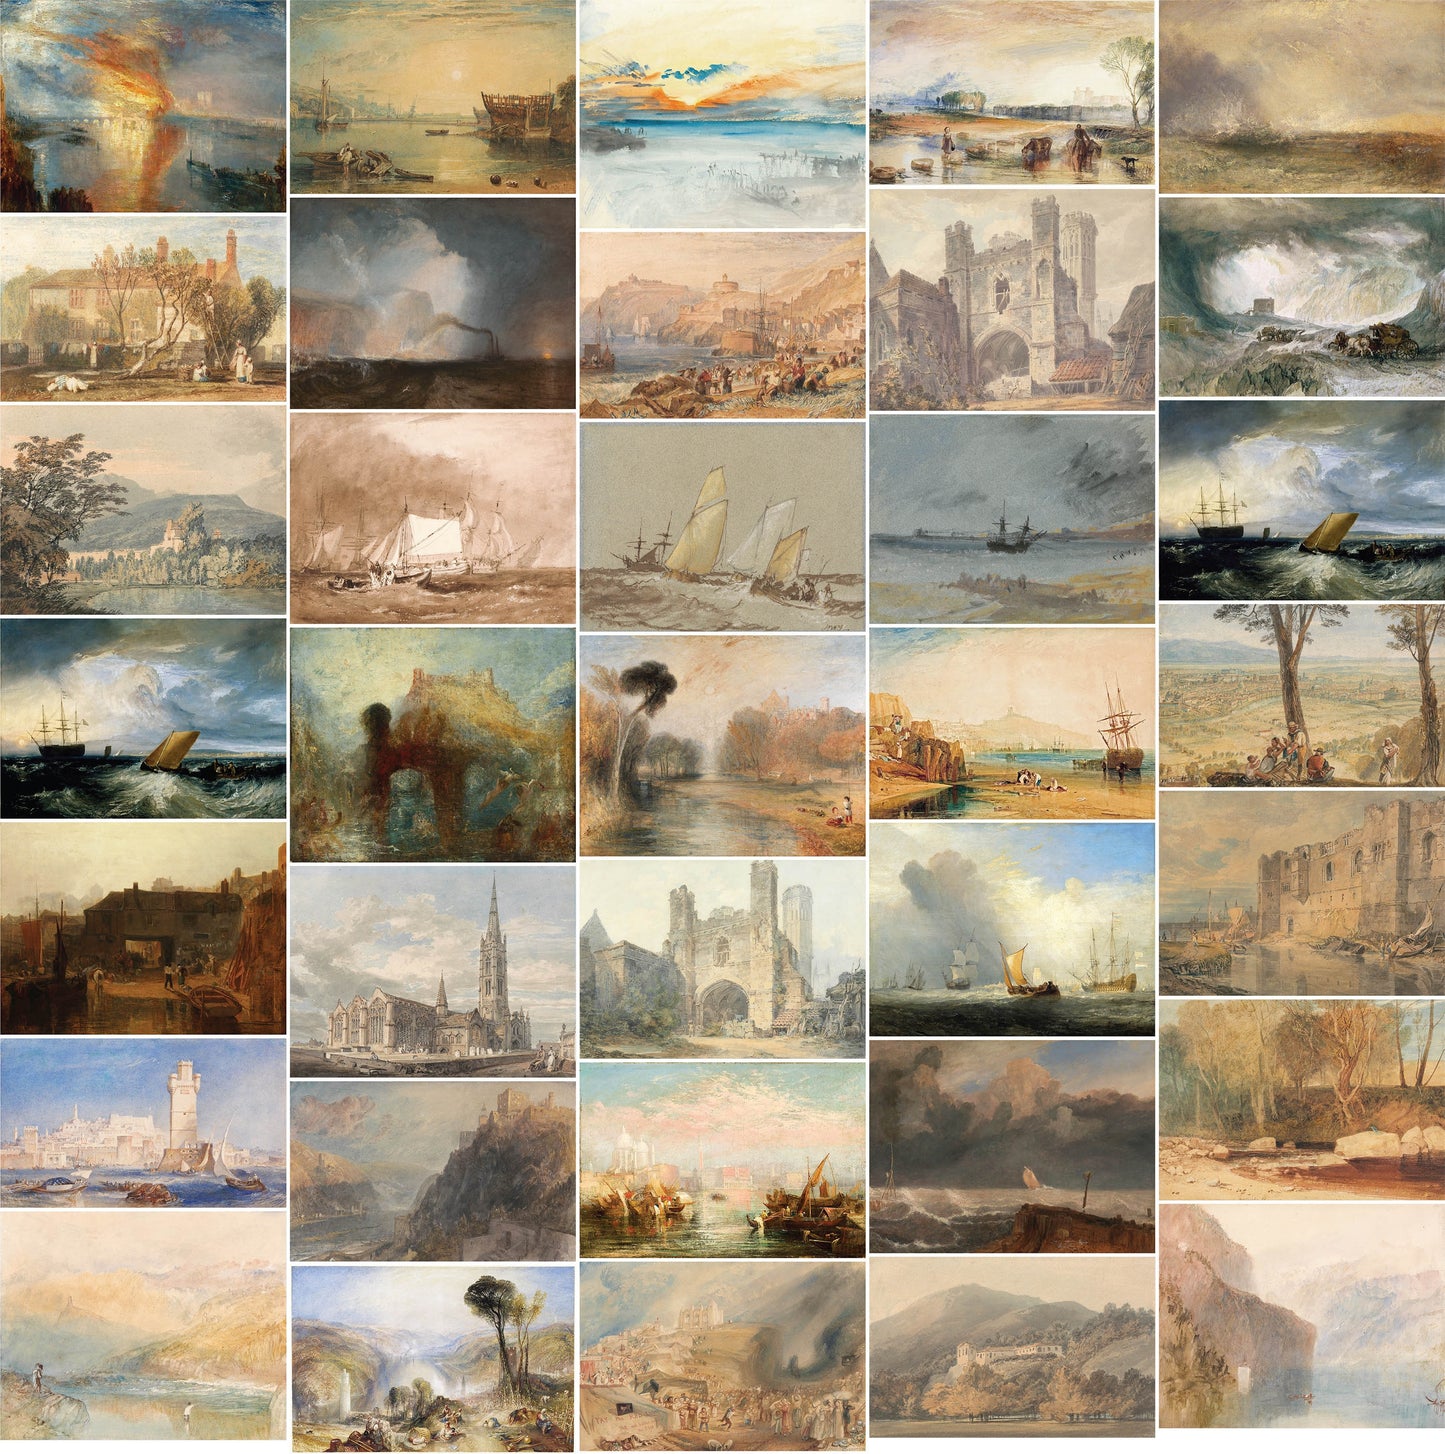 J M W Turner Watercolor & Oil Landscape Paintings Set 3 [35 Images]